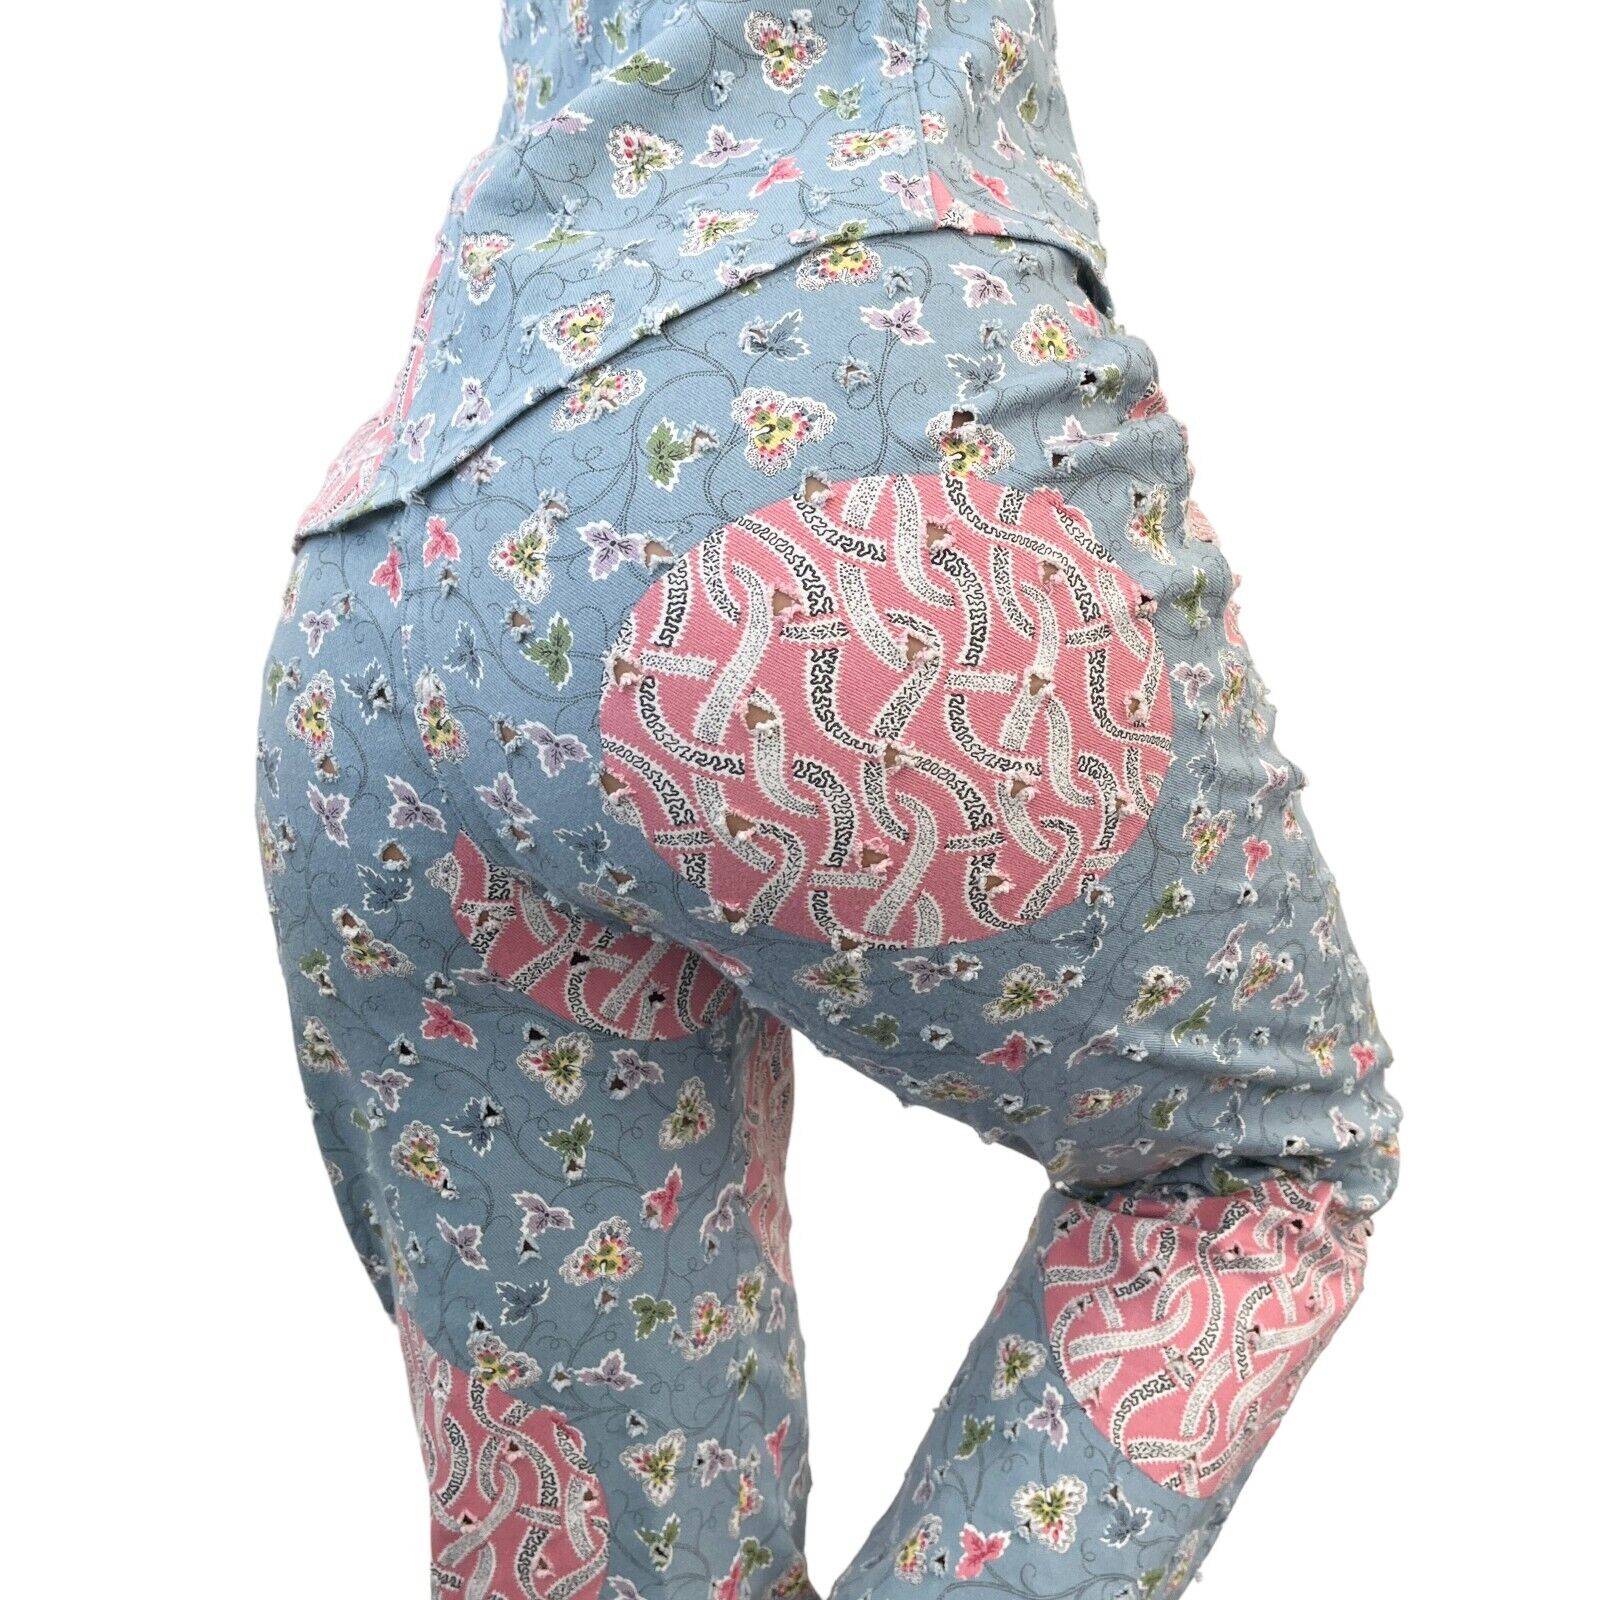 Christian Dior Vintage Logo Jacket Pants Set #38 #36 Blue Pink Flower Rank AB